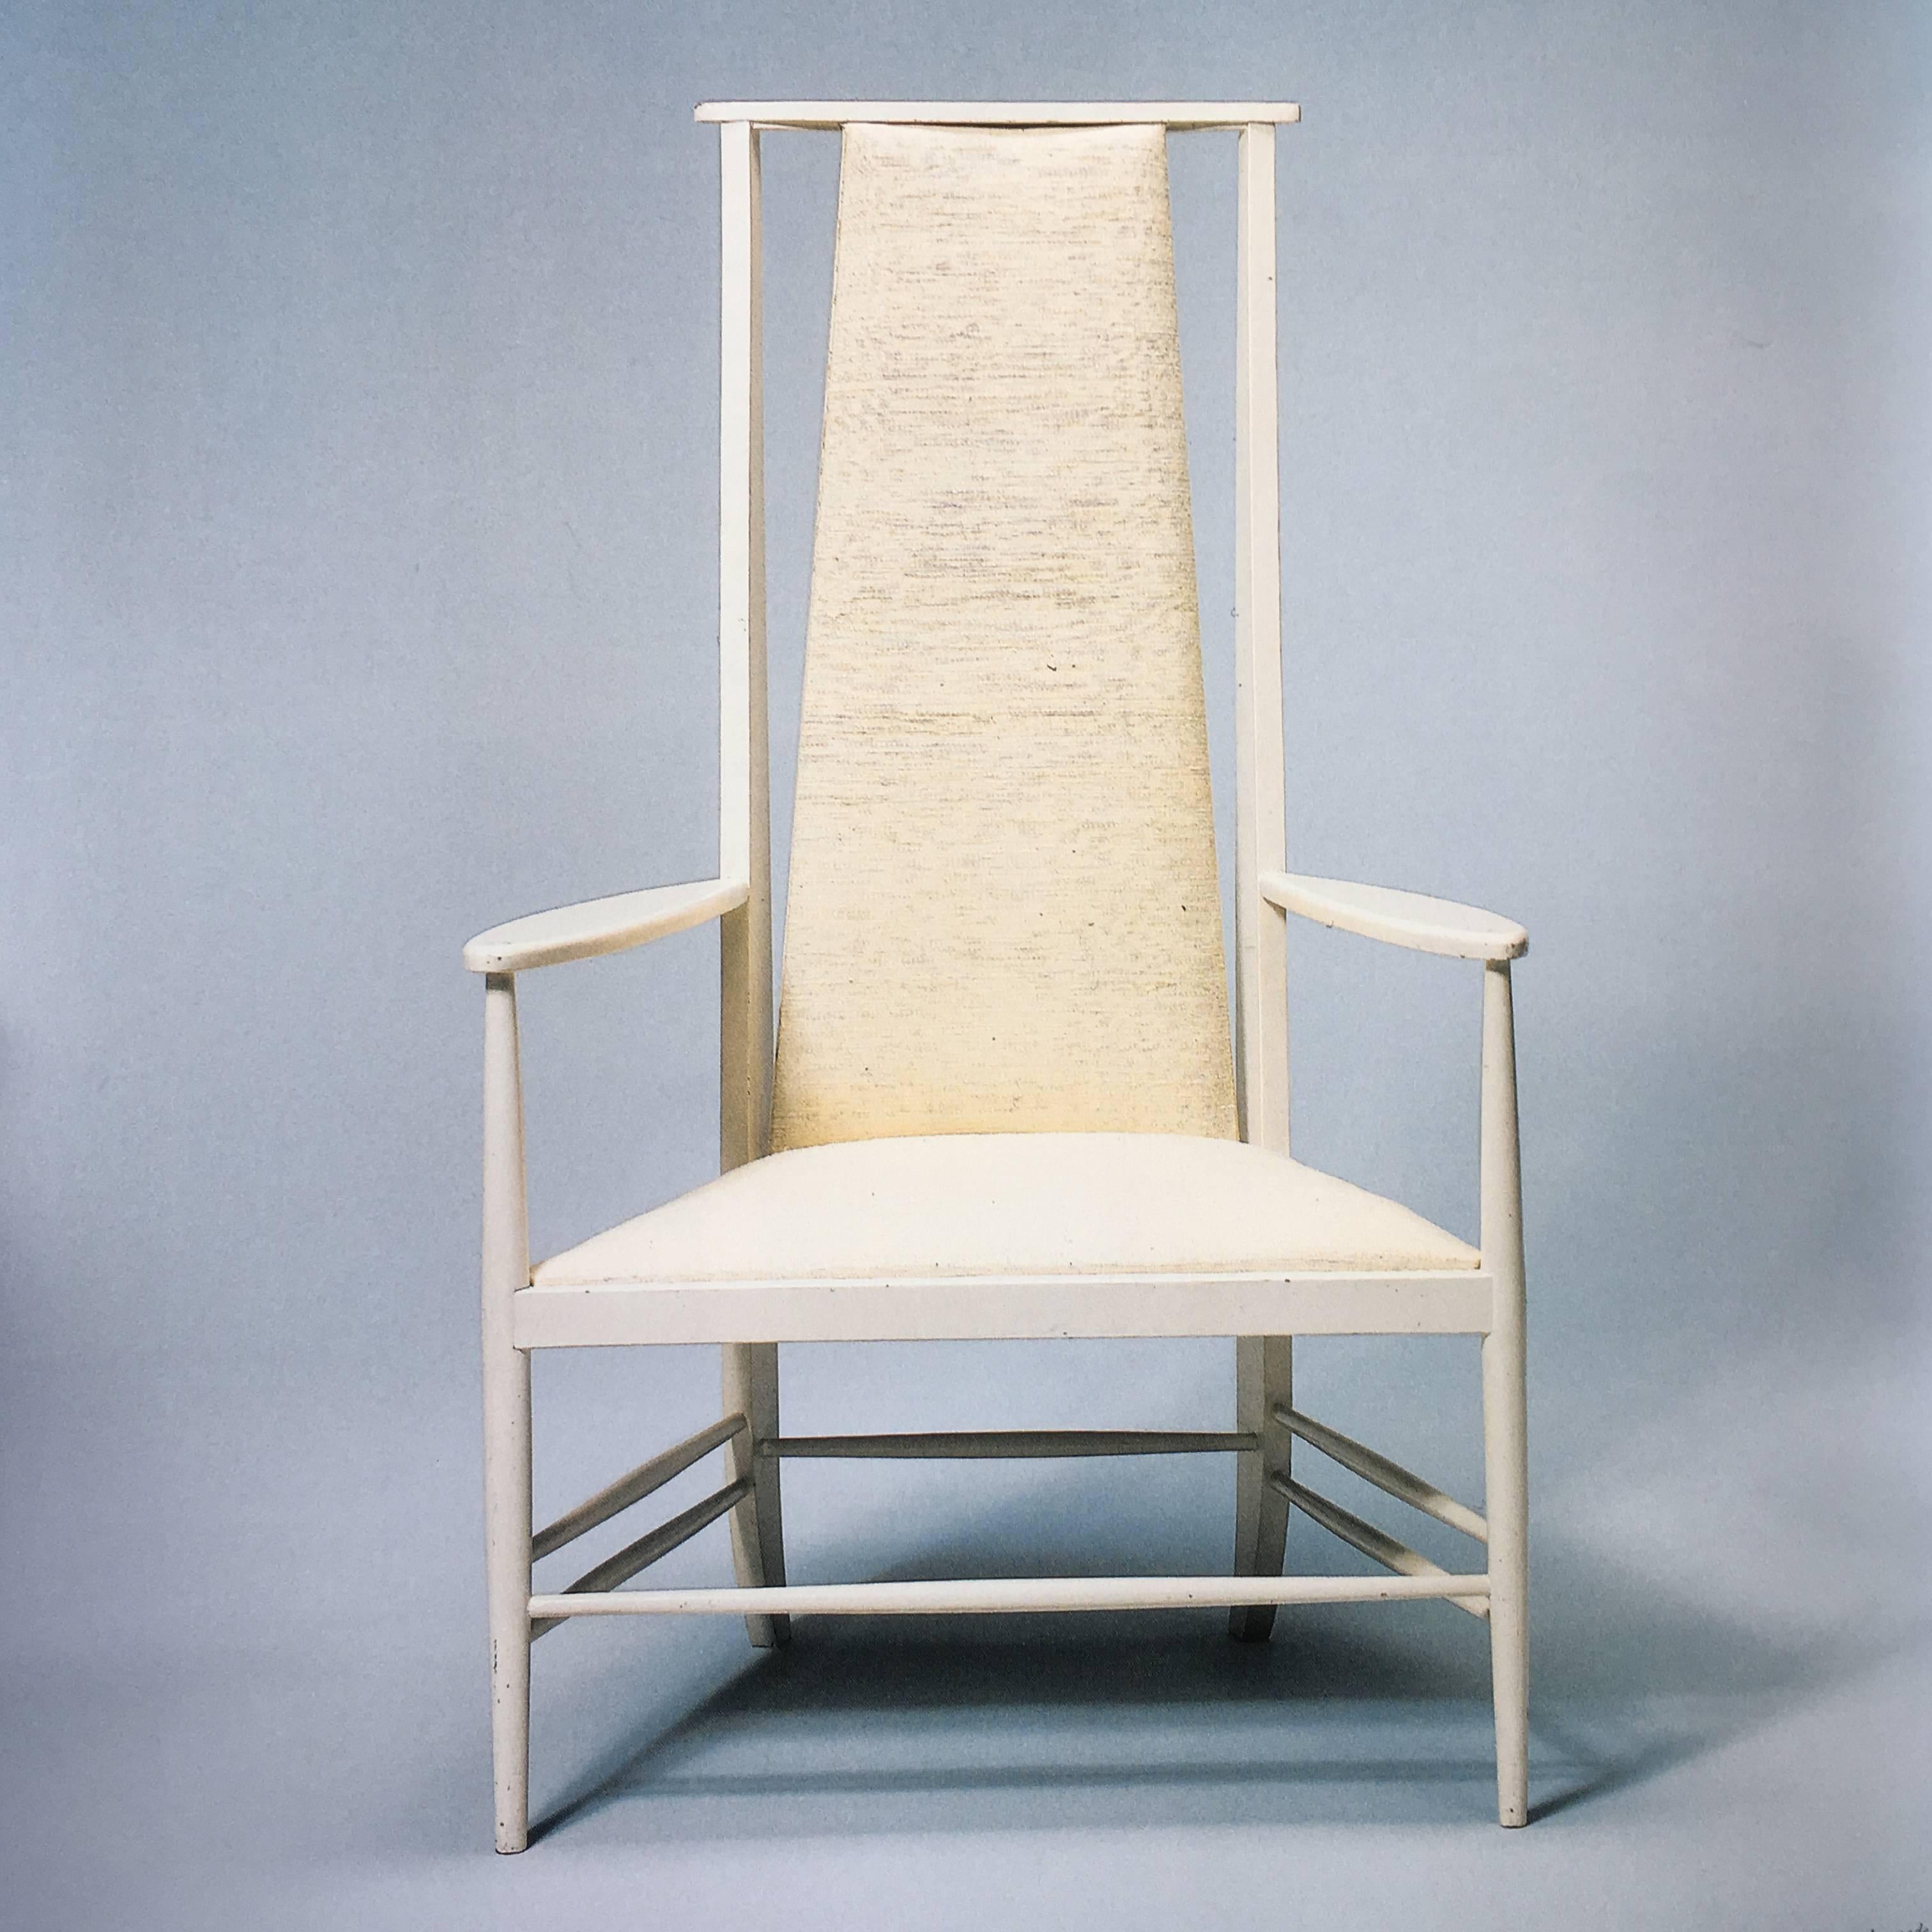 Contemporary British Furniture 1600 -2000 